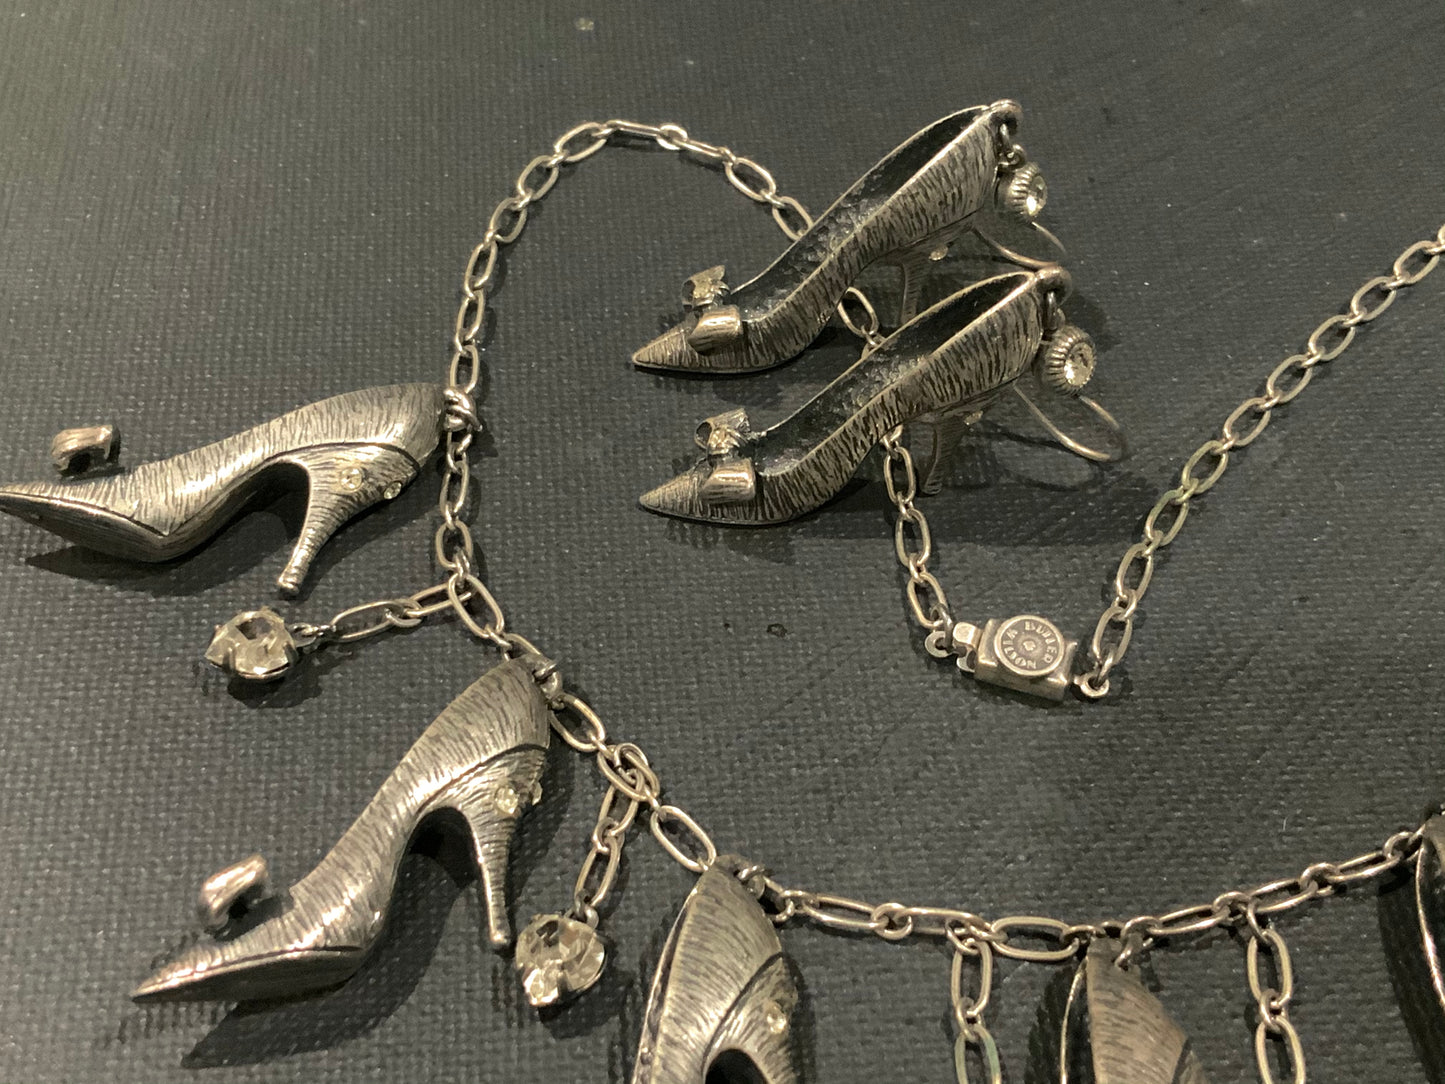 Butler & Wilson Silver Stiletto Heels Necklace & Earrings Set Swarovski Crystal Hearts